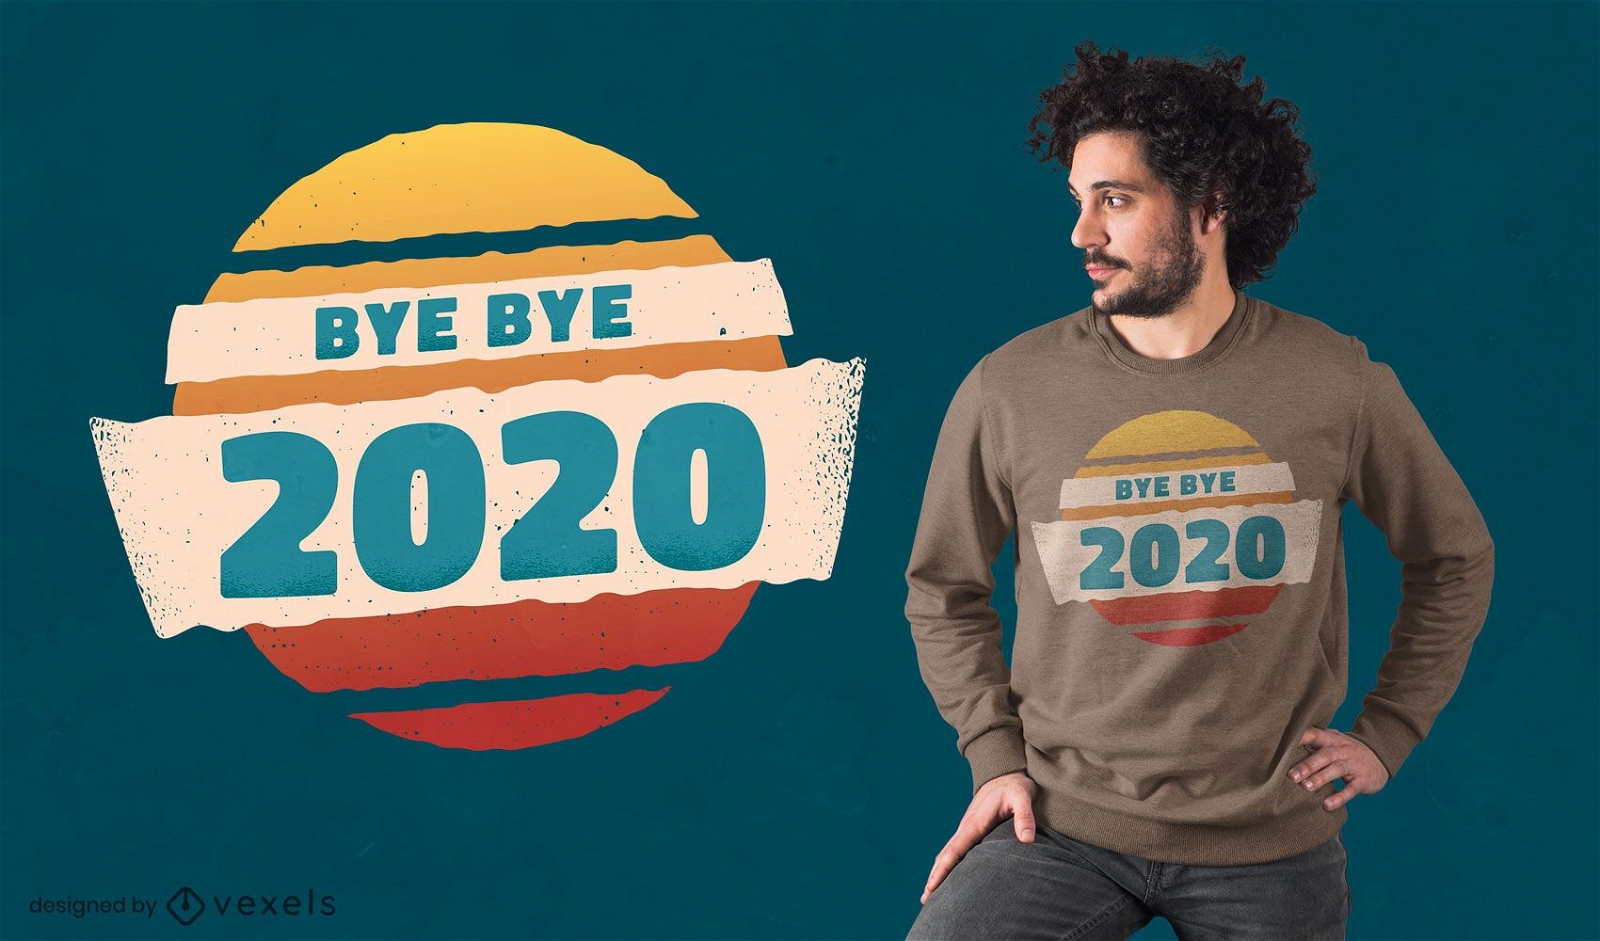 Dise?o de camiseta Bye bye 2020